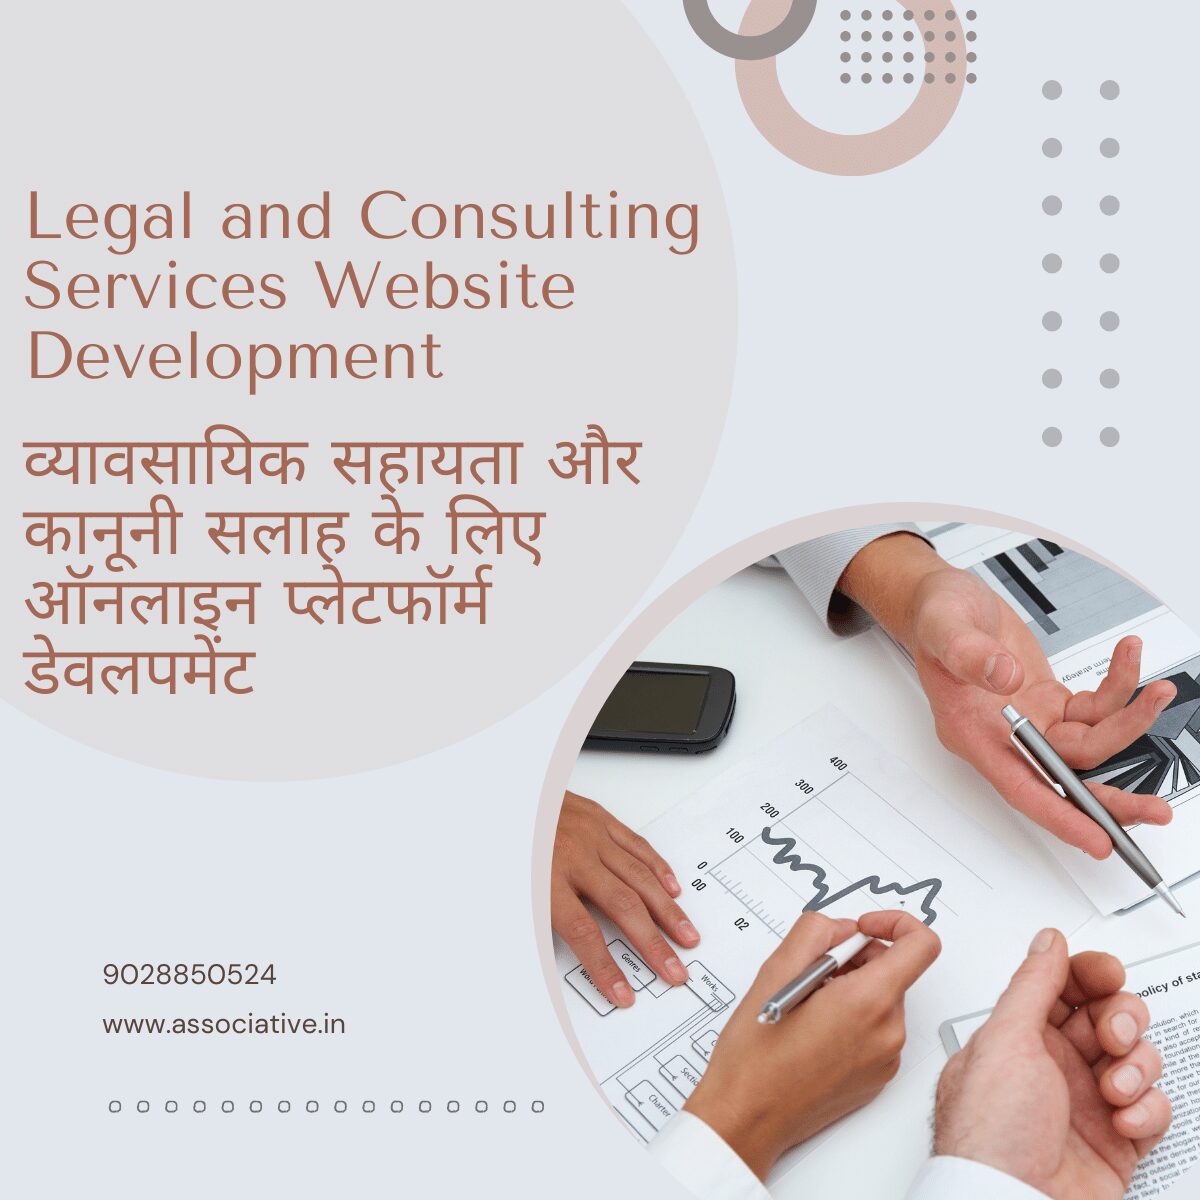 Legal and Consulting Services Website Development व्यावसायिक सहायता और कानूनी सलाह के लिए ऑनलाइन प्लेटफॉर्म डेवलपमेंट